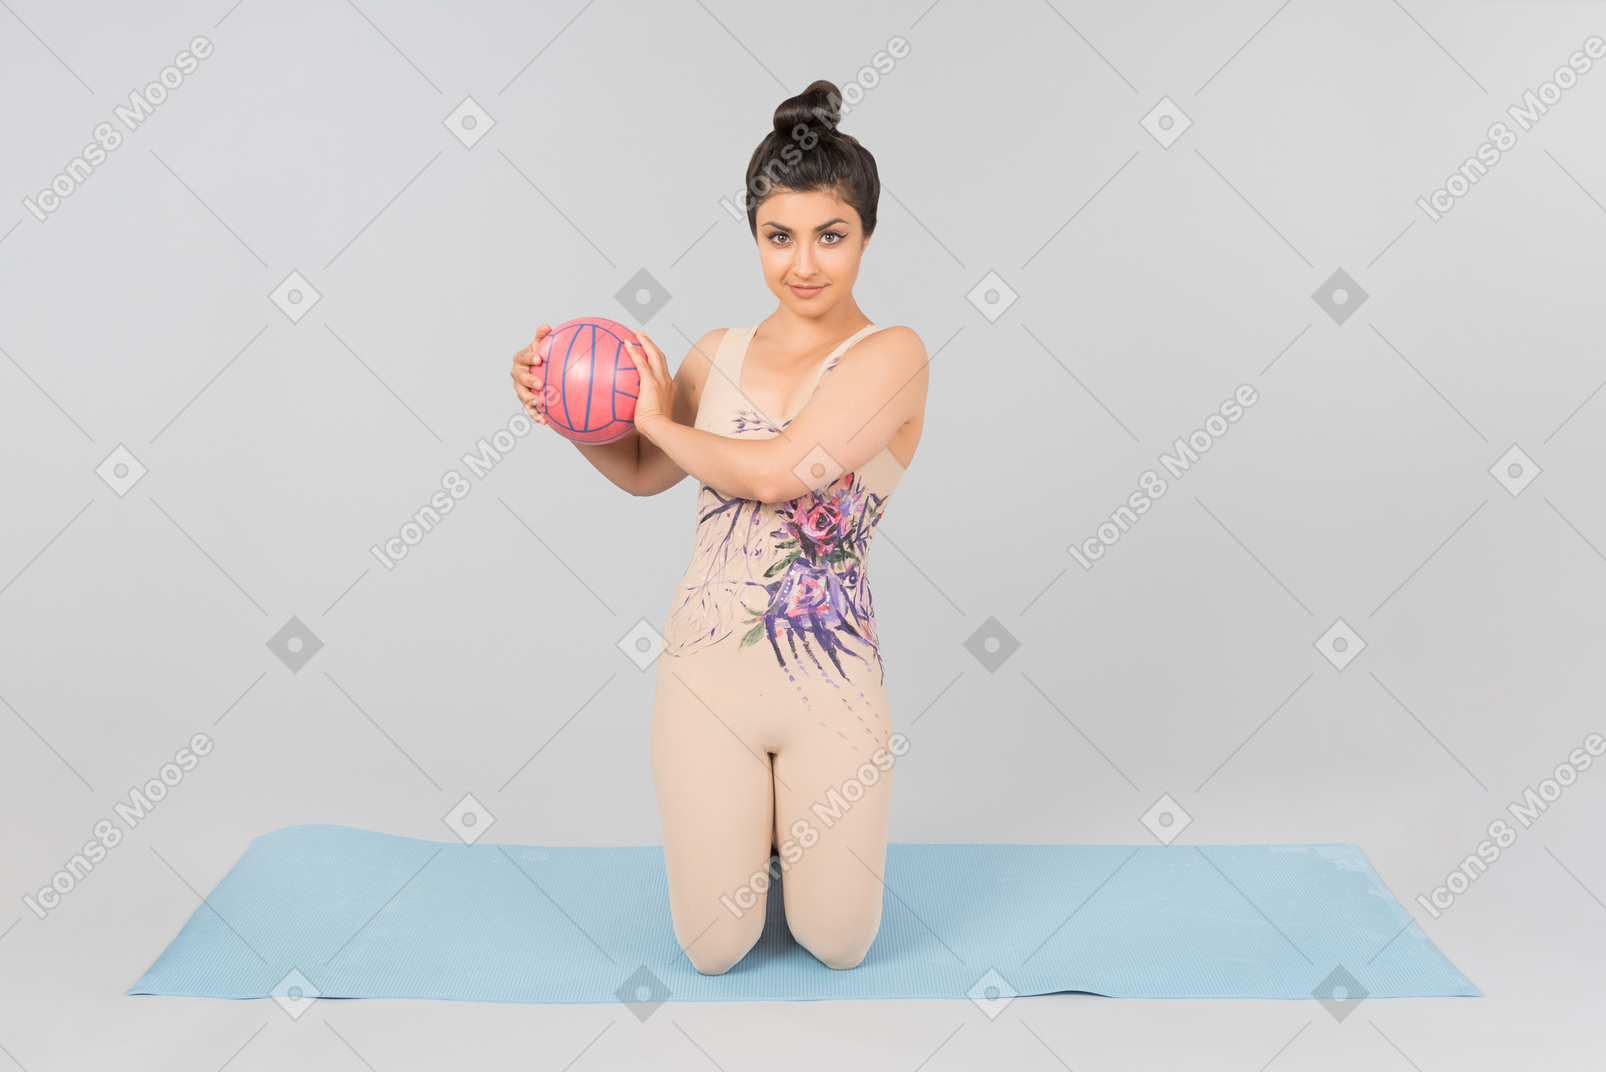 ヨガのマットの上に座っていると両手でボールを保持している若いインドの体操選手